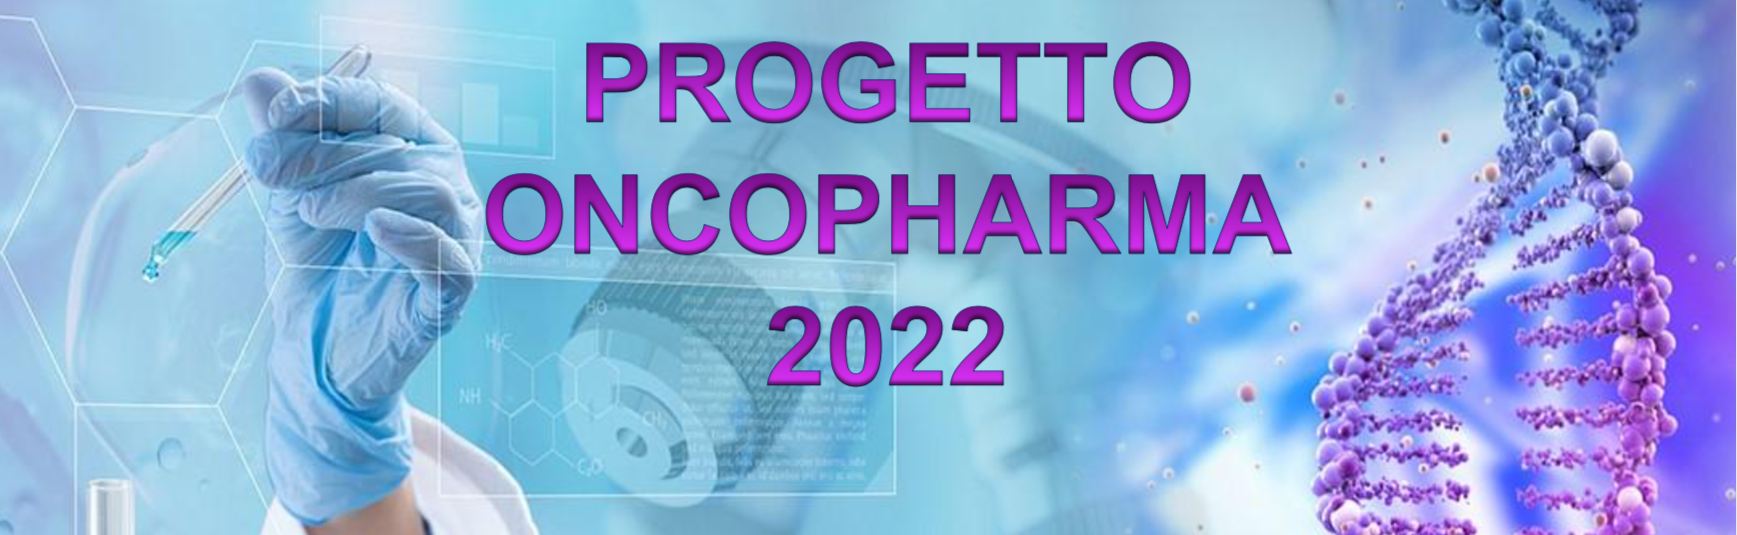 Course Image PROGETTO ONCOPHARMA 2022 - FARMACOLOGIA & FARMACOGENETICA